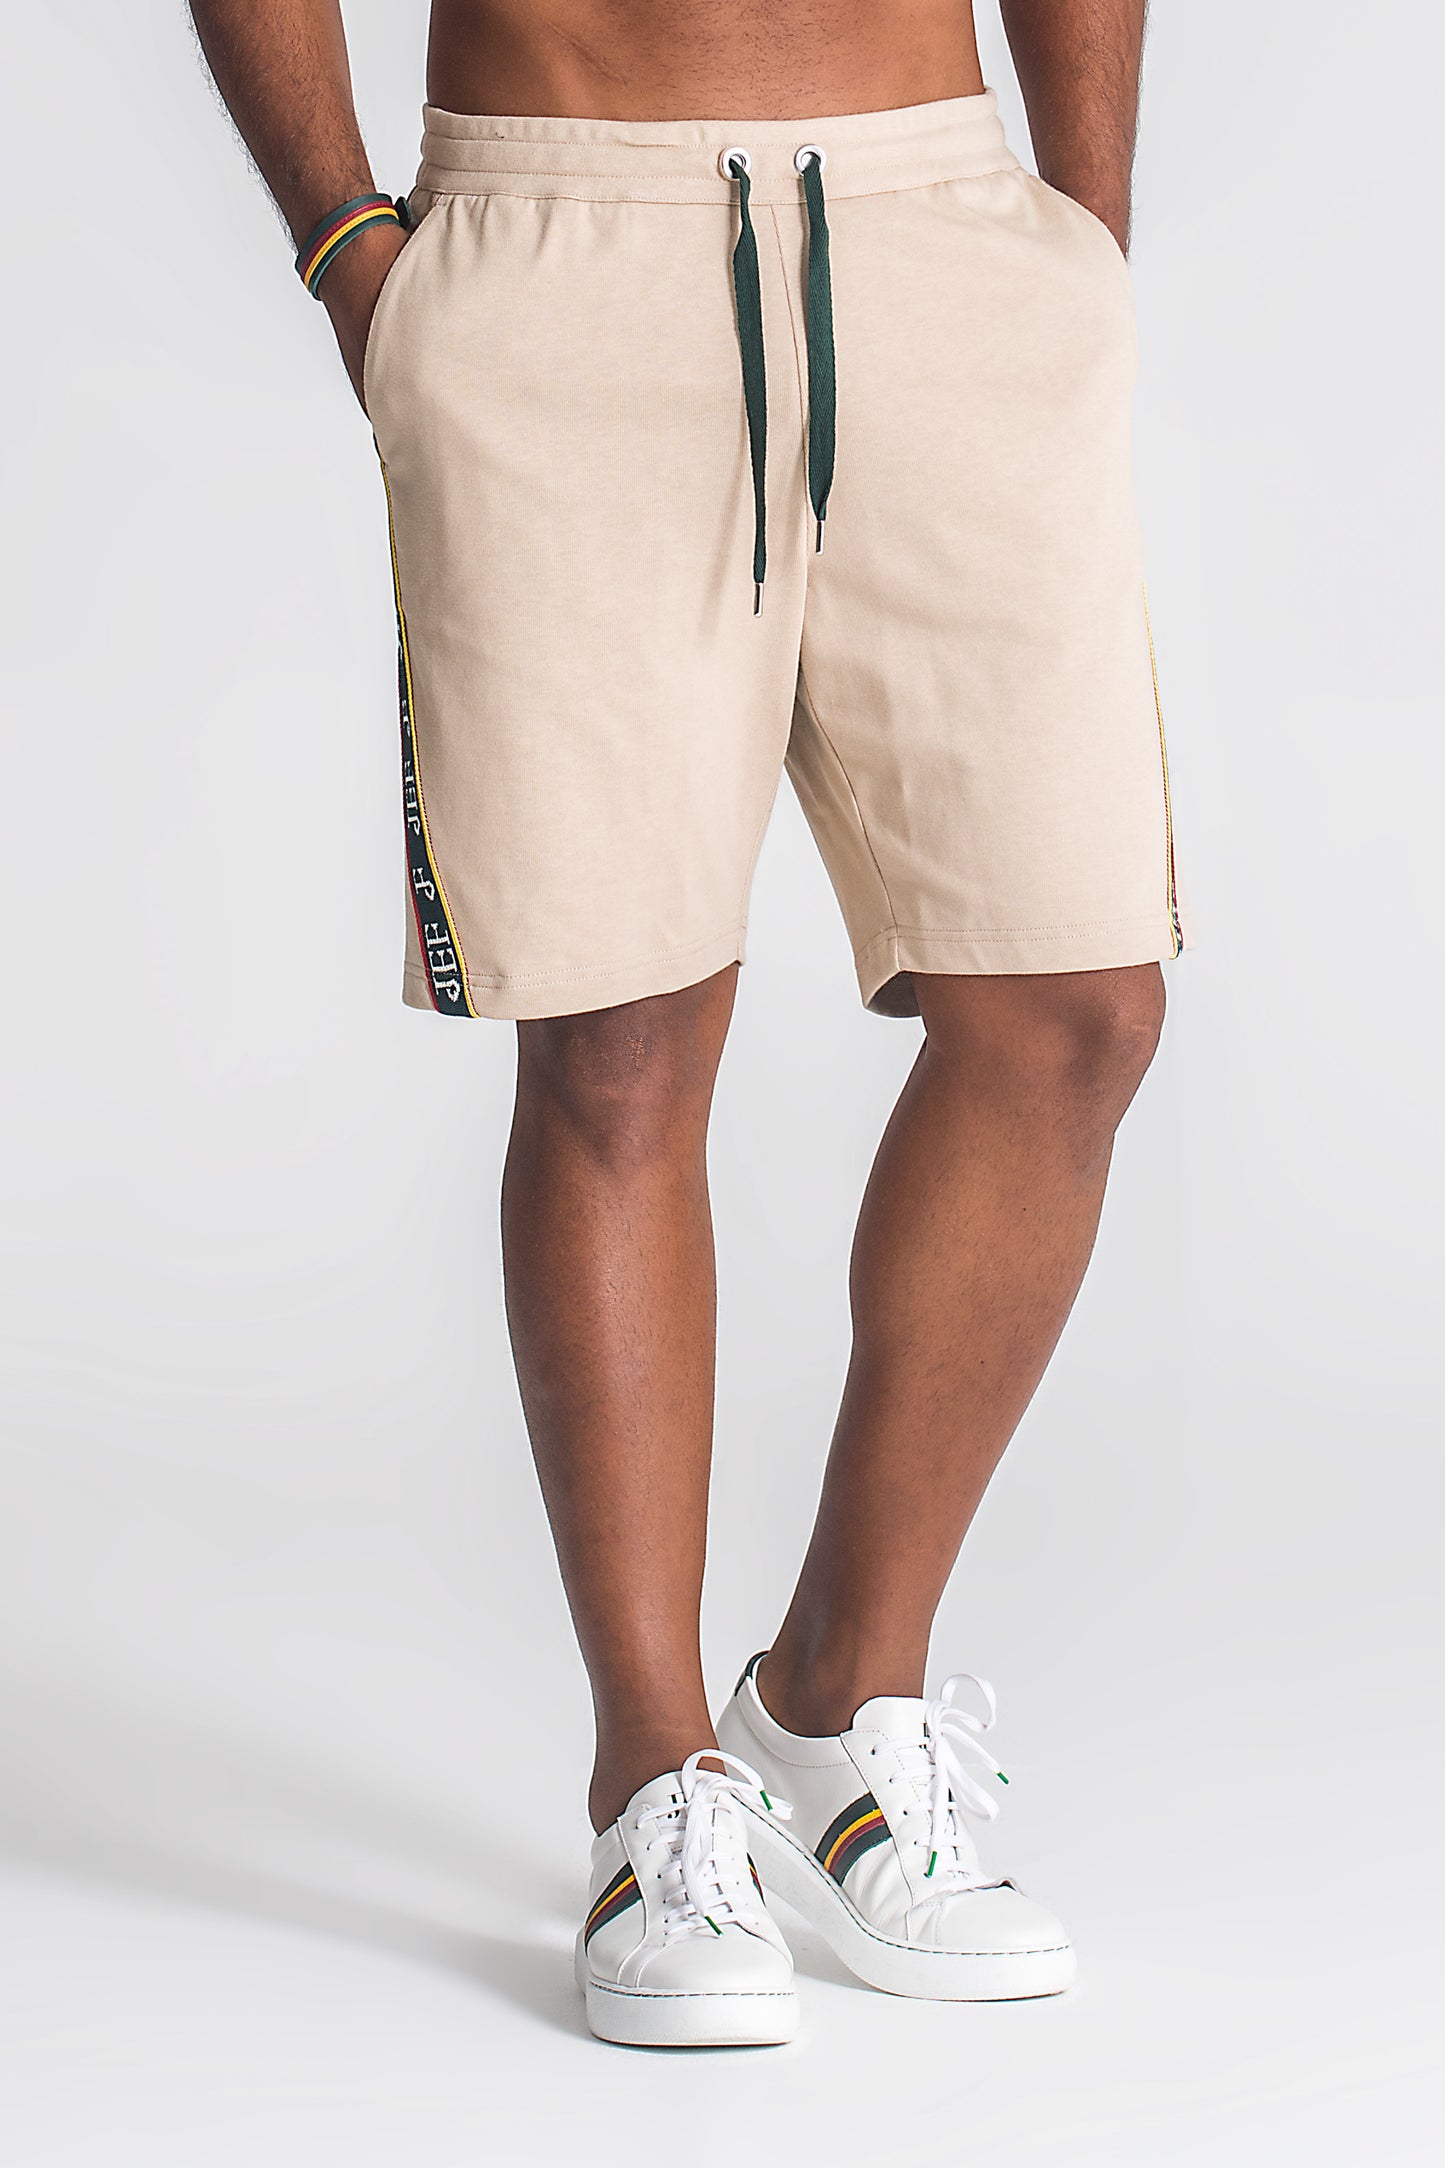 Donatello Shorts